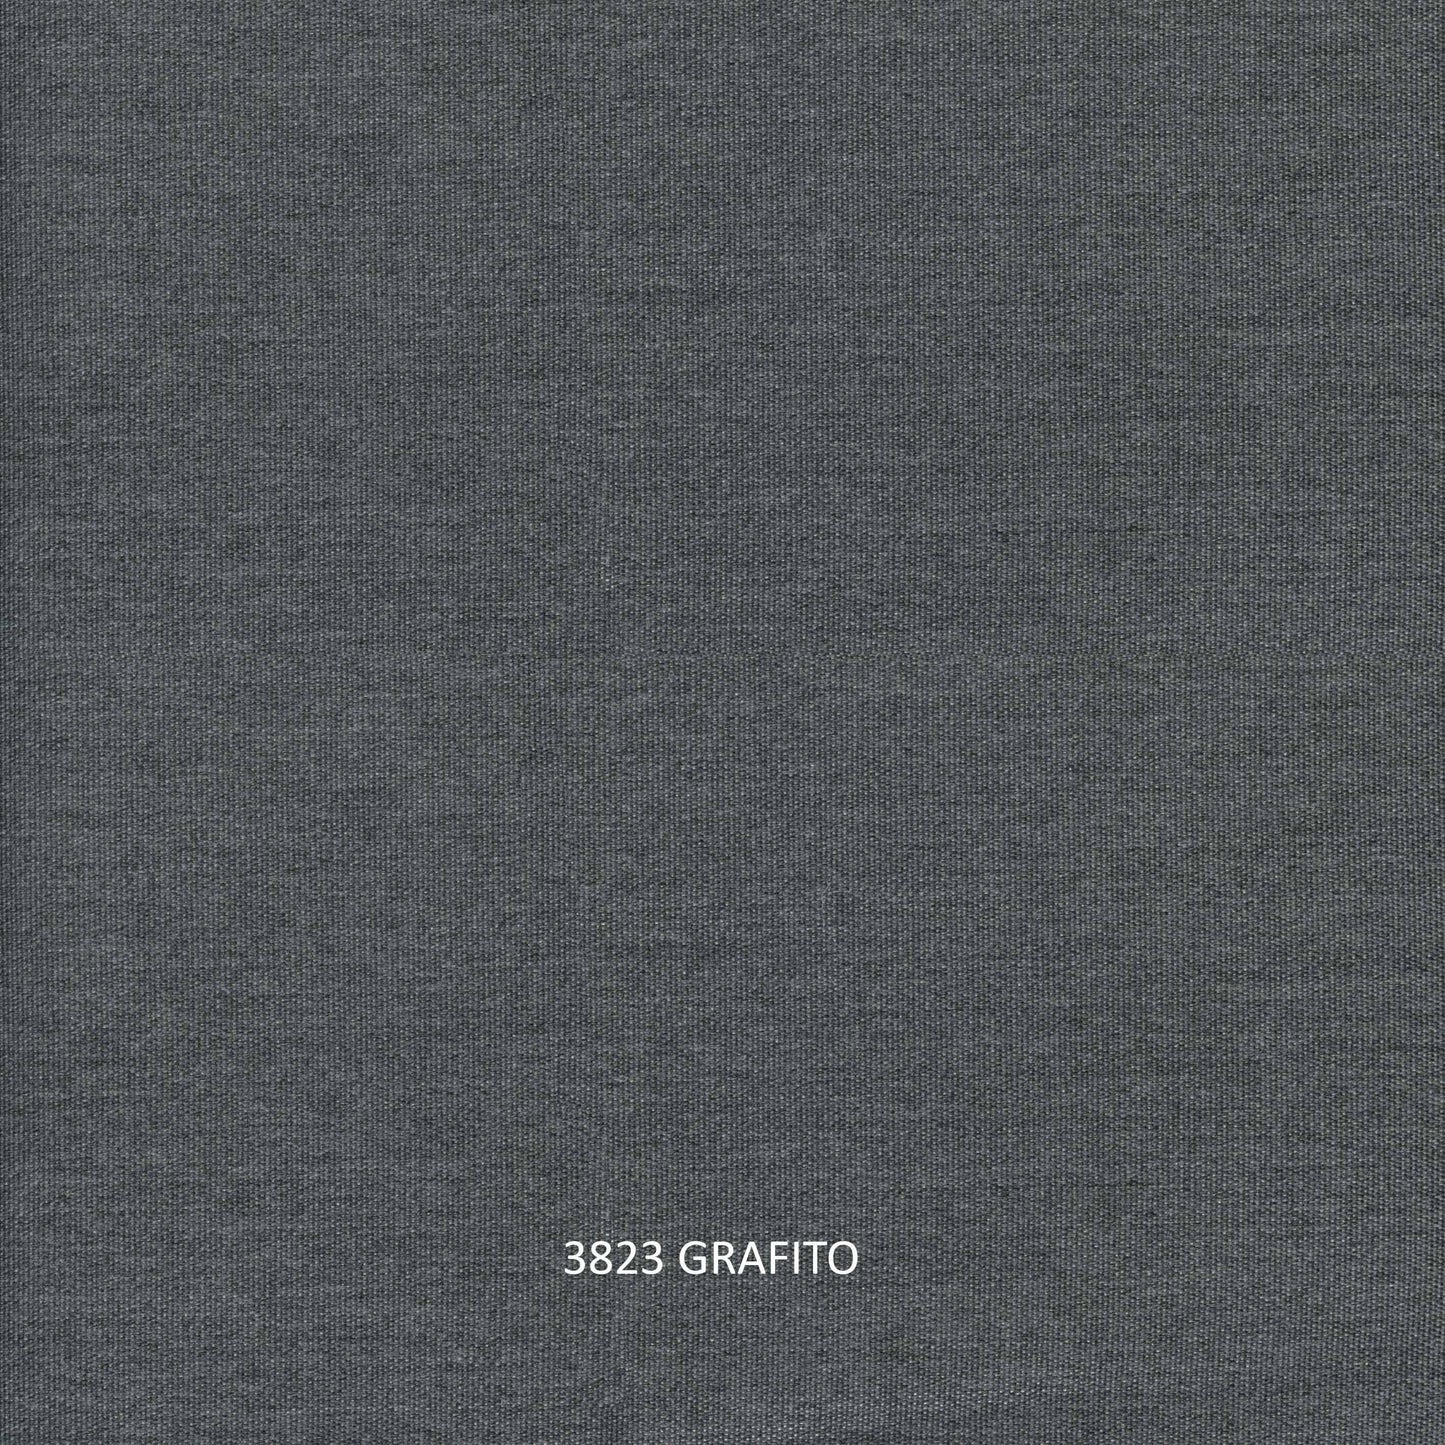 Milano Sofa - PadioLiving - Milano Sofa - Outdoor Sofa - Dark Grey 21mm Strap - Grafito (£2398) - PadioLiving